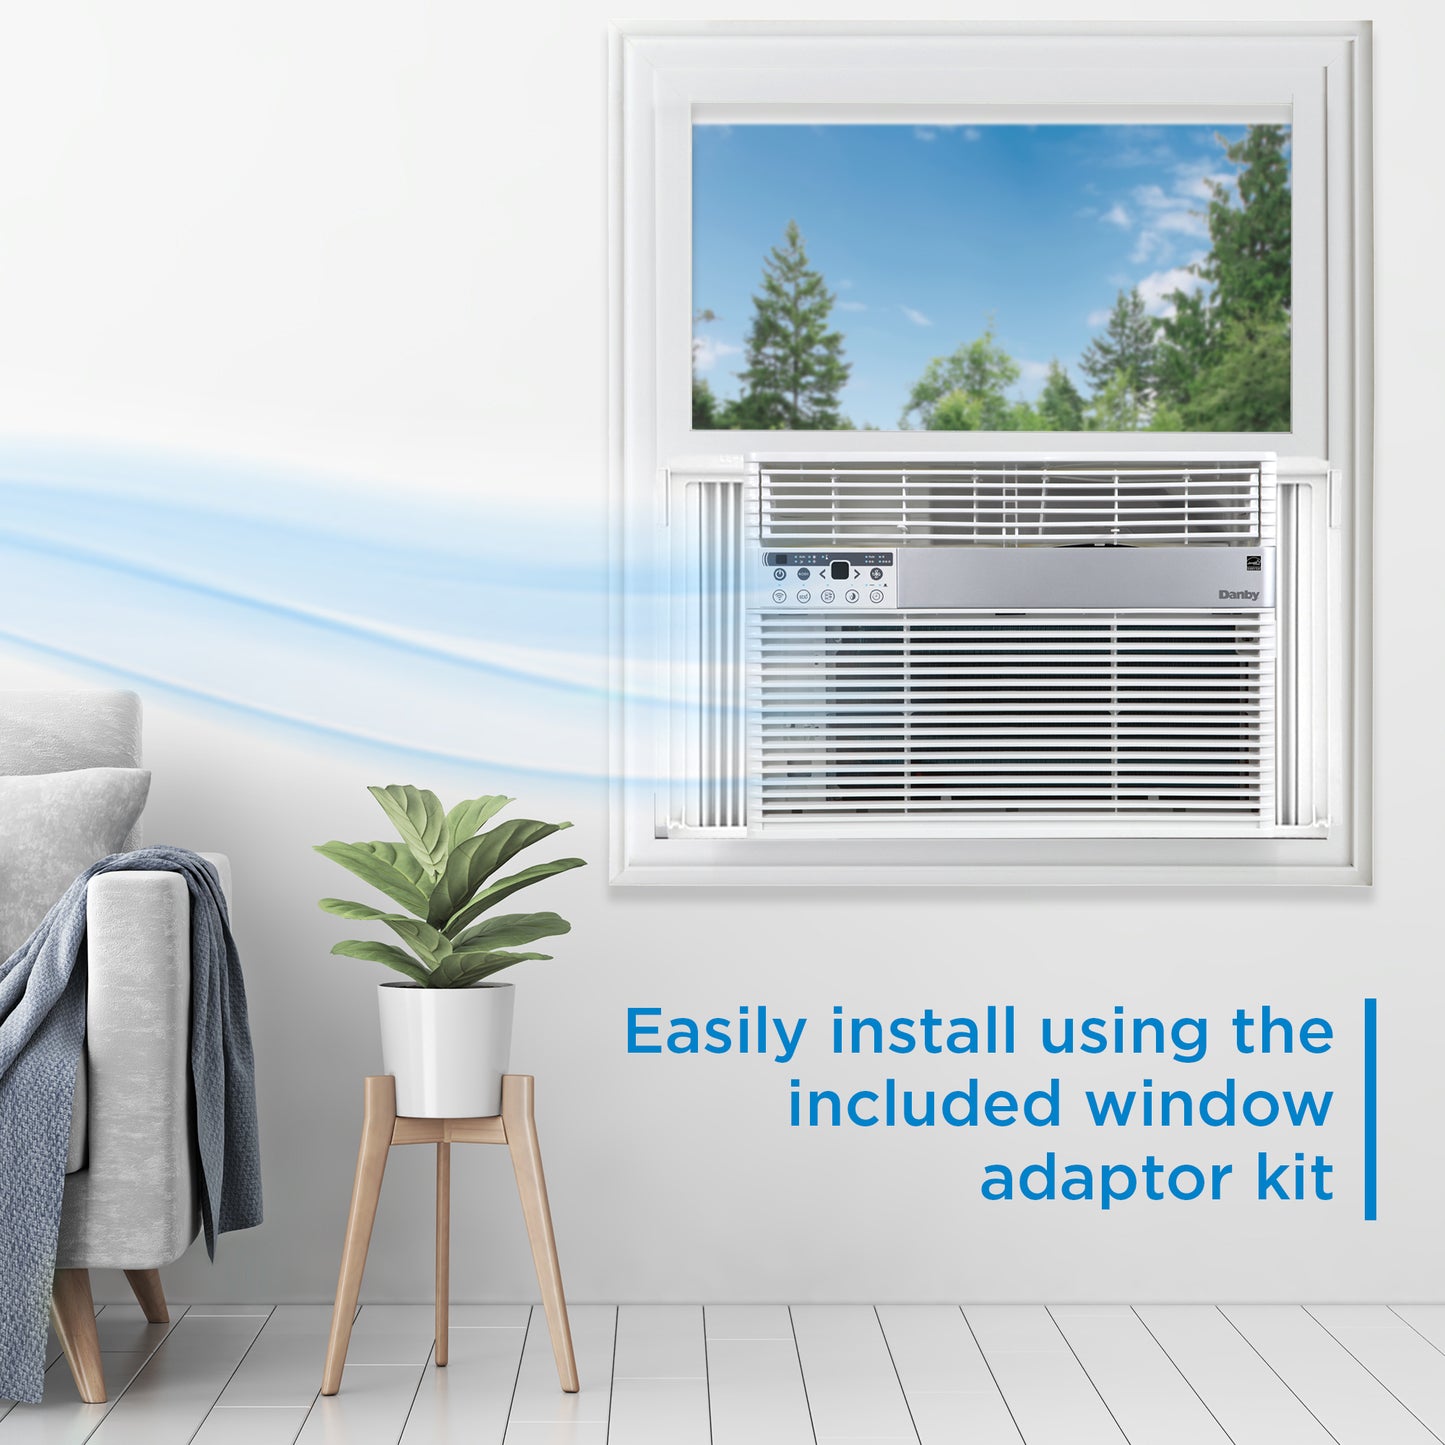 Danby 14500 BTU Window Air Conditioner - RF